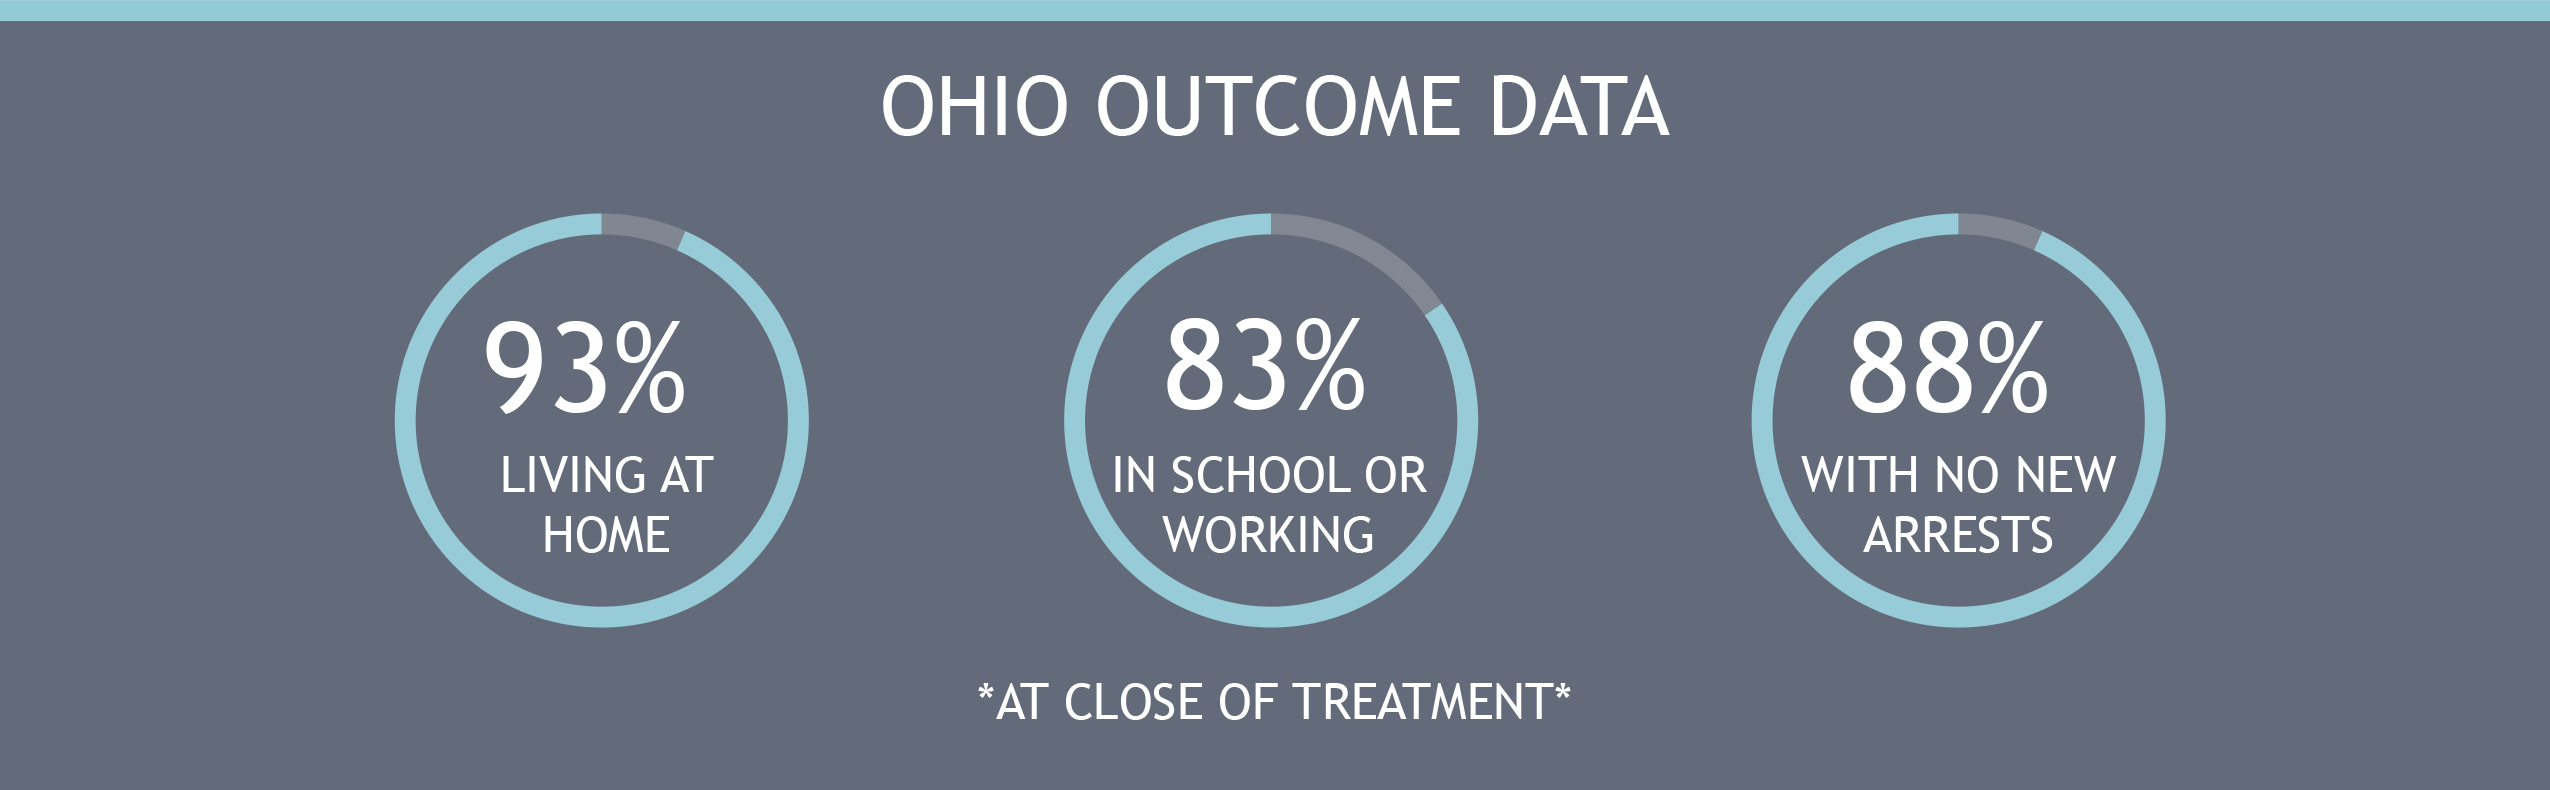 Ohio Outcome Data -1